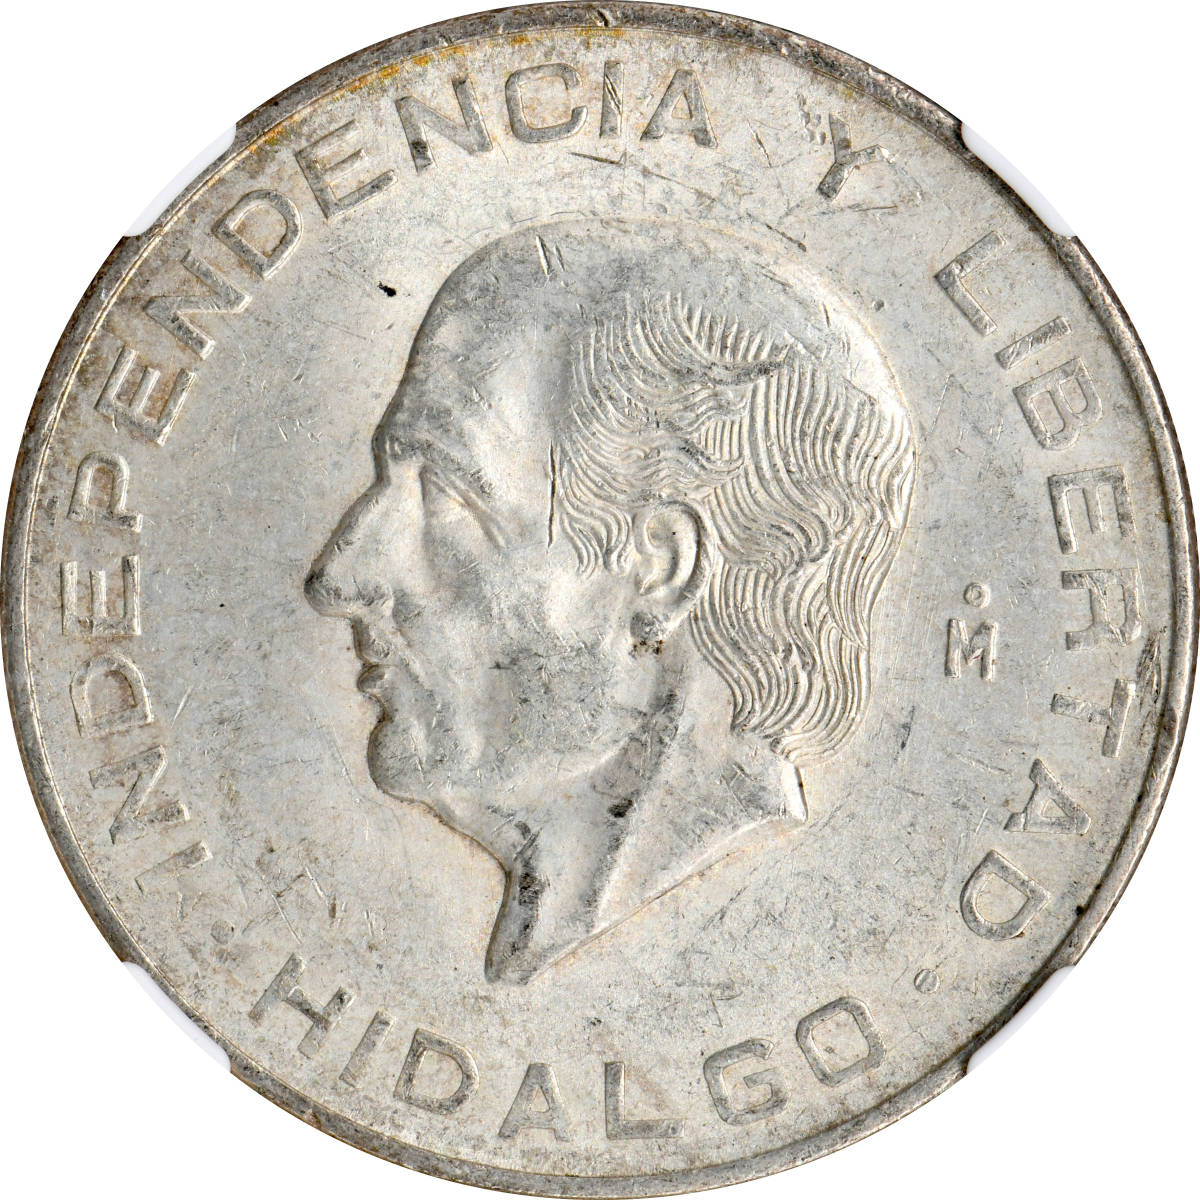 1円〜1956 メギシコ S10P銀貨 NGC MS62 未使用 世界コイン 古銭 貨幣 硬貨 銀貨 金貨 銅貨_画像2